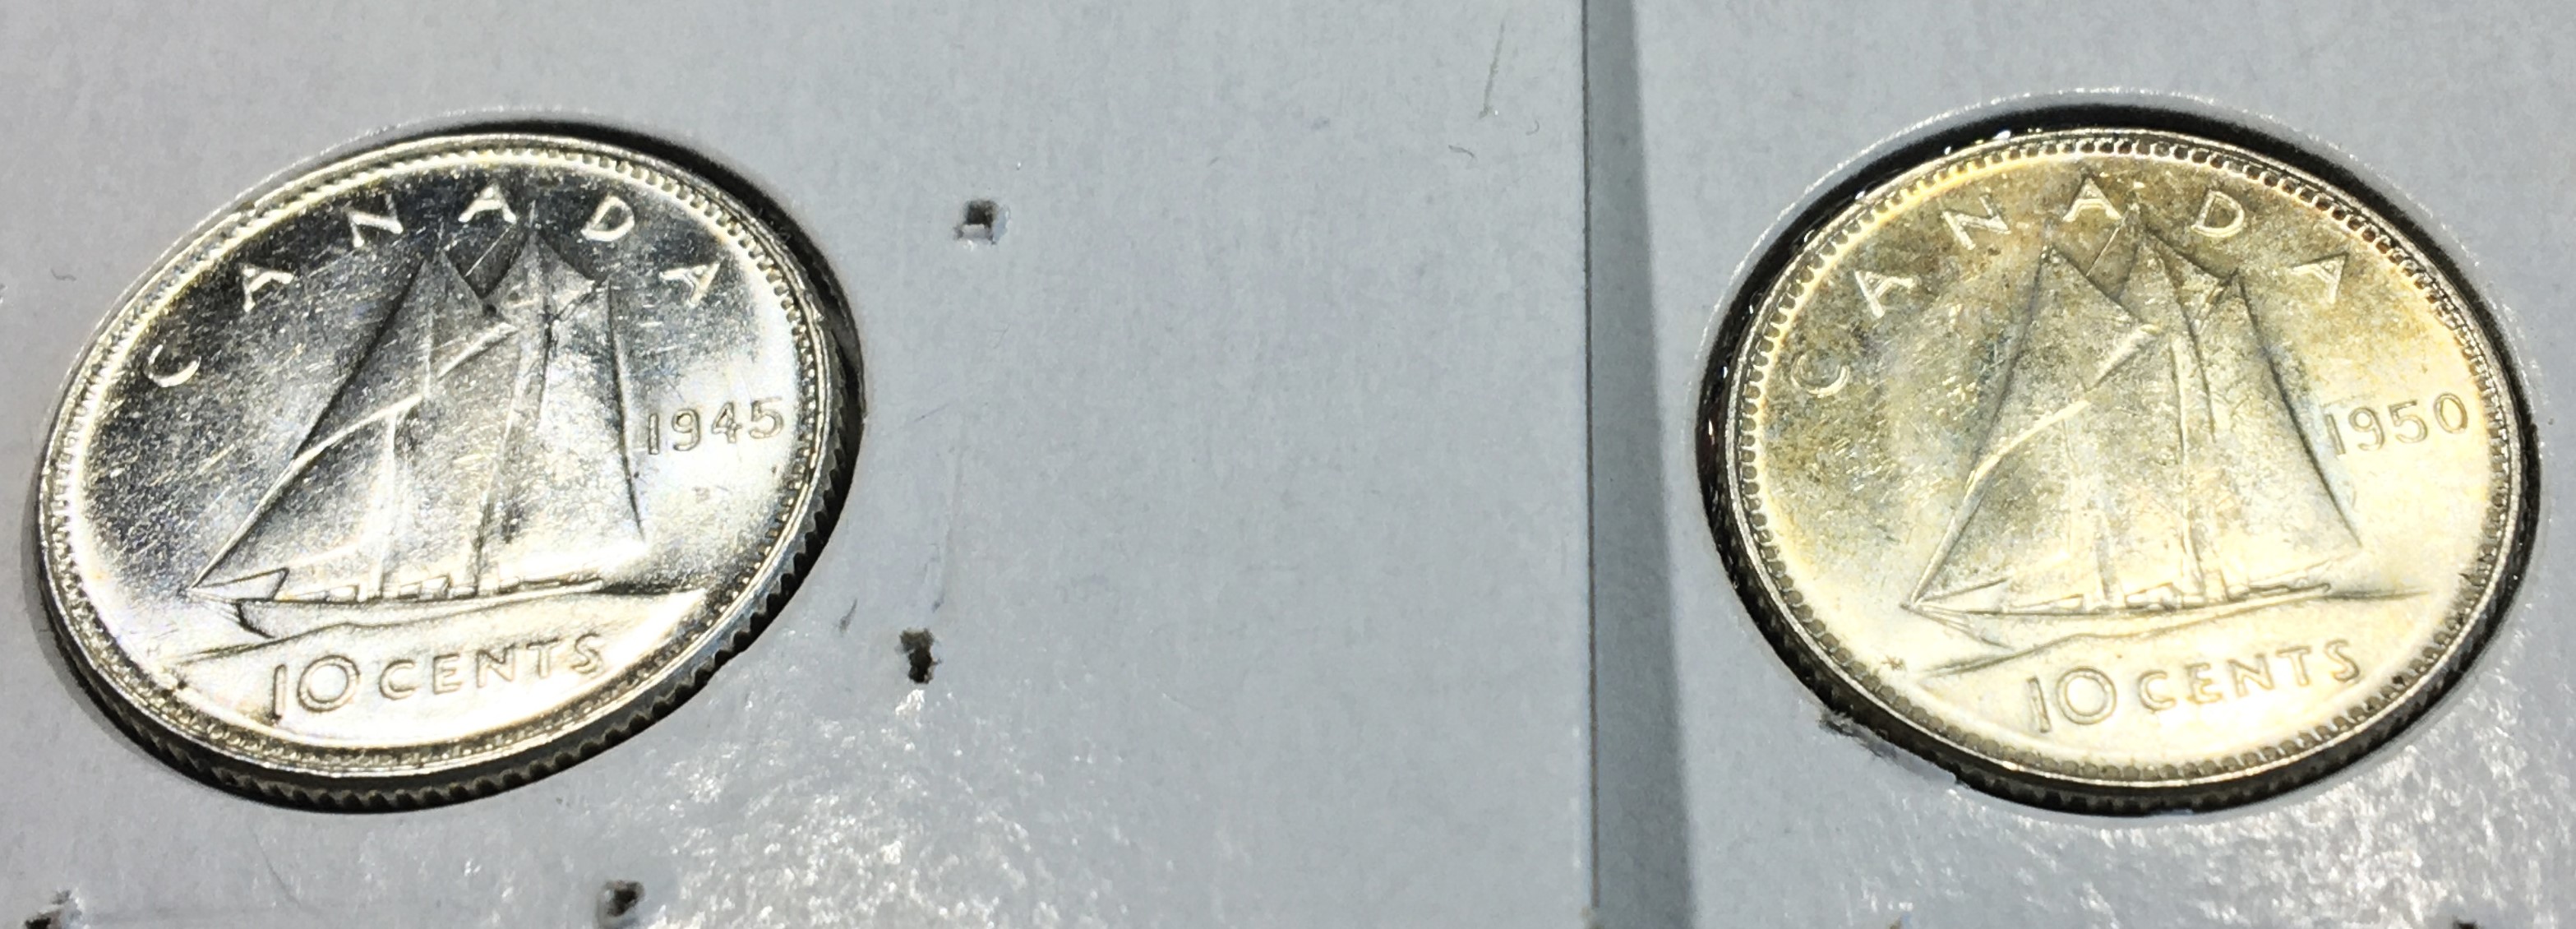 2 pièces de 10 cents 1945 1950.JPG